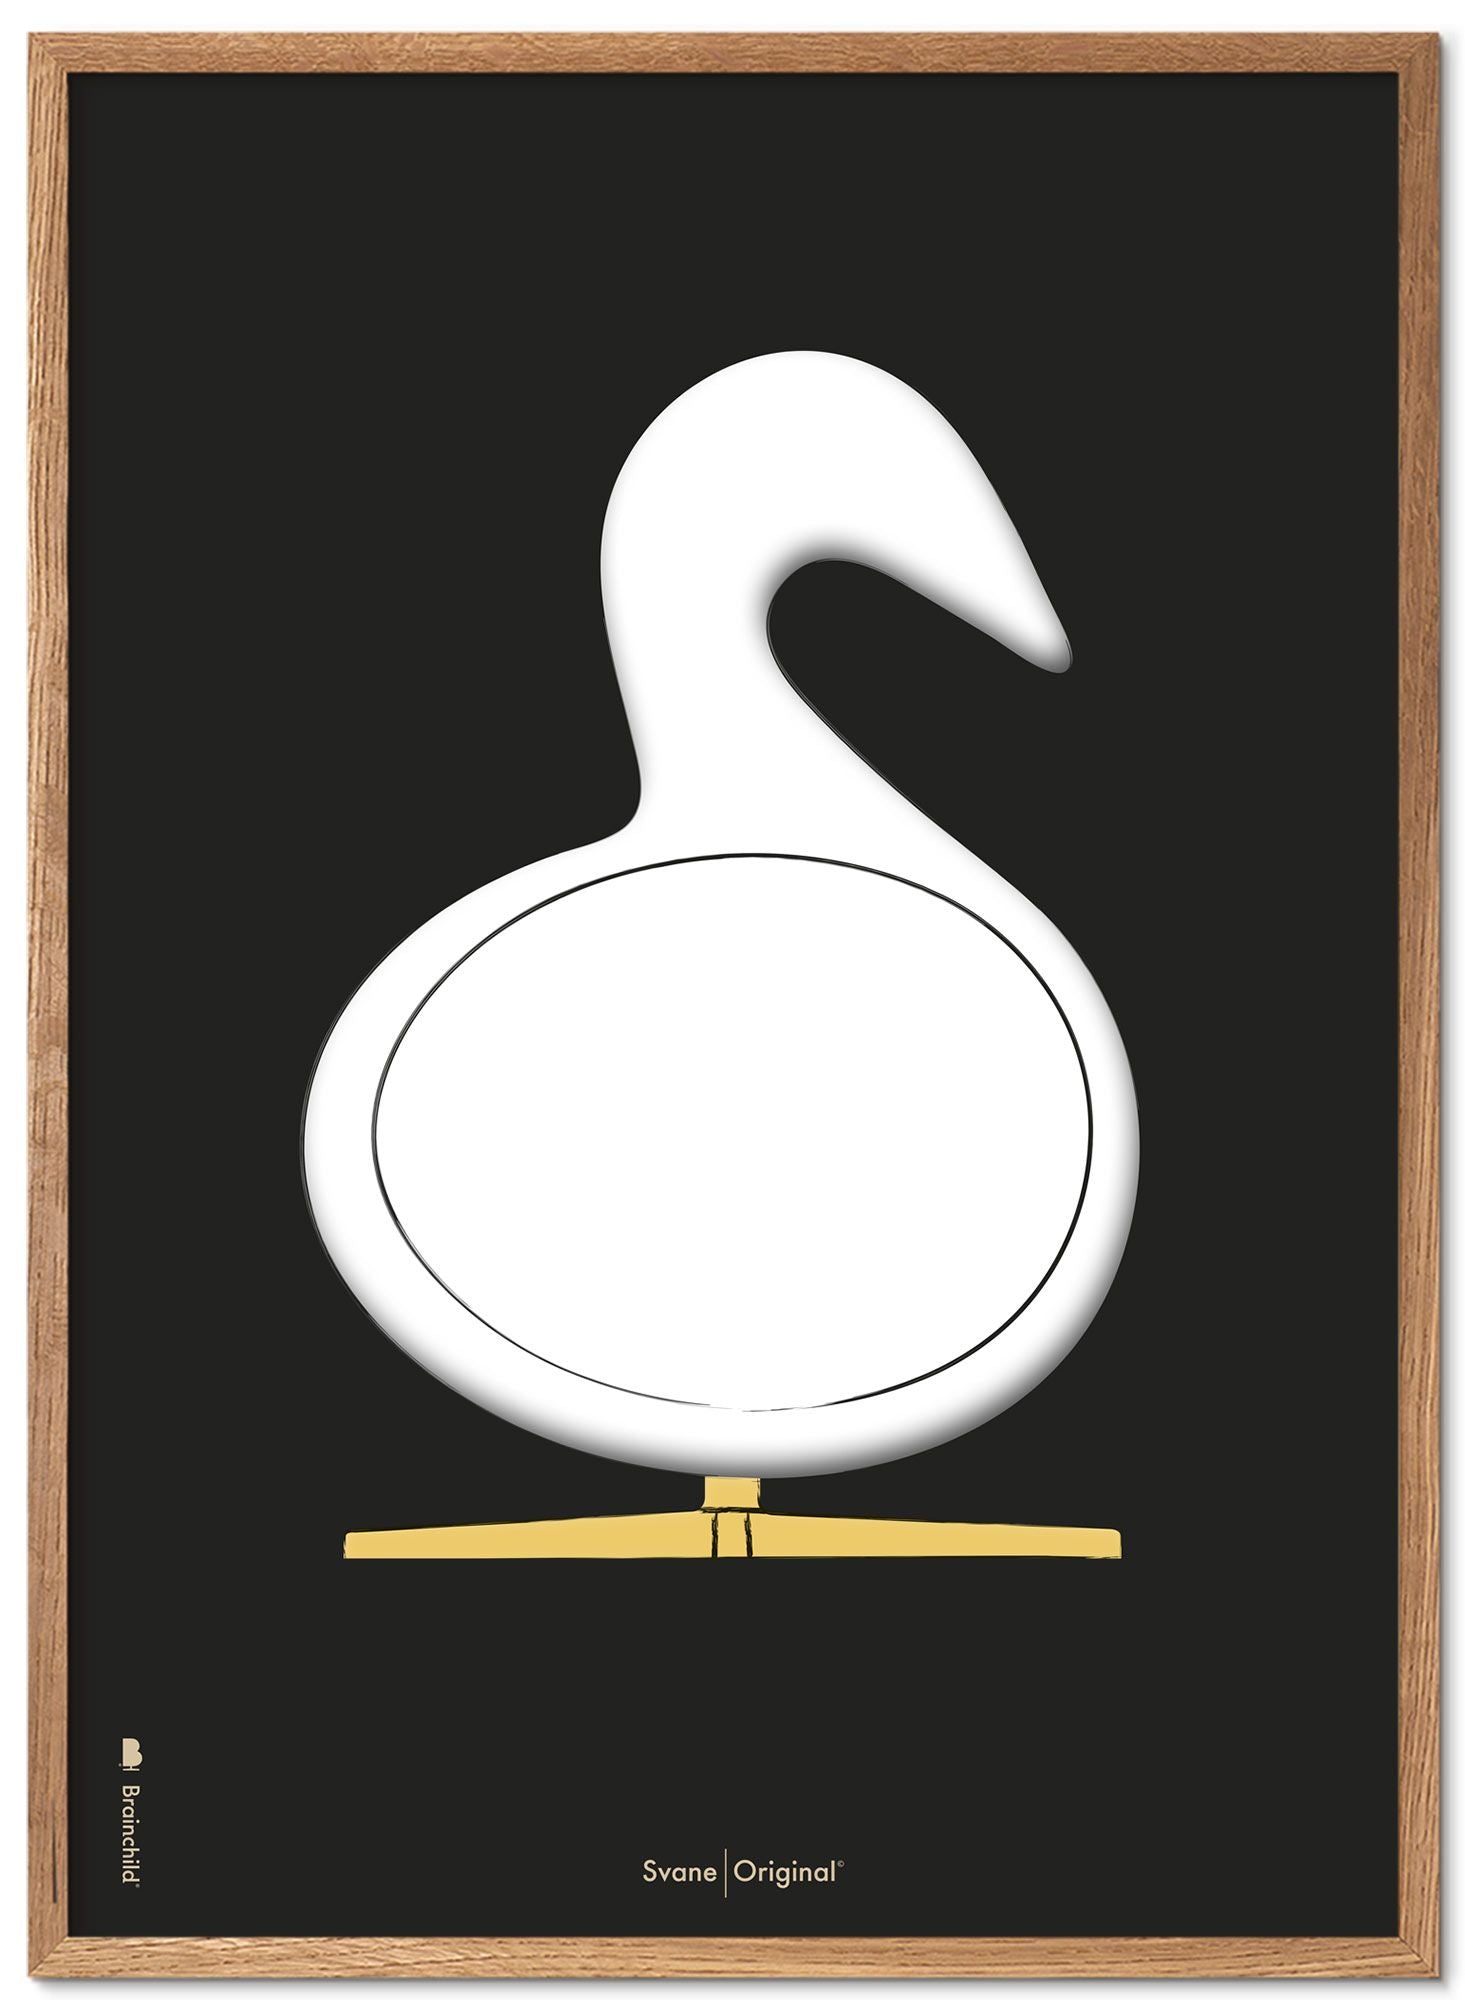 Brainchild Swan Design Sketch Poster Frame gjord av lätt trä 30x40 cm, svart bakgrund